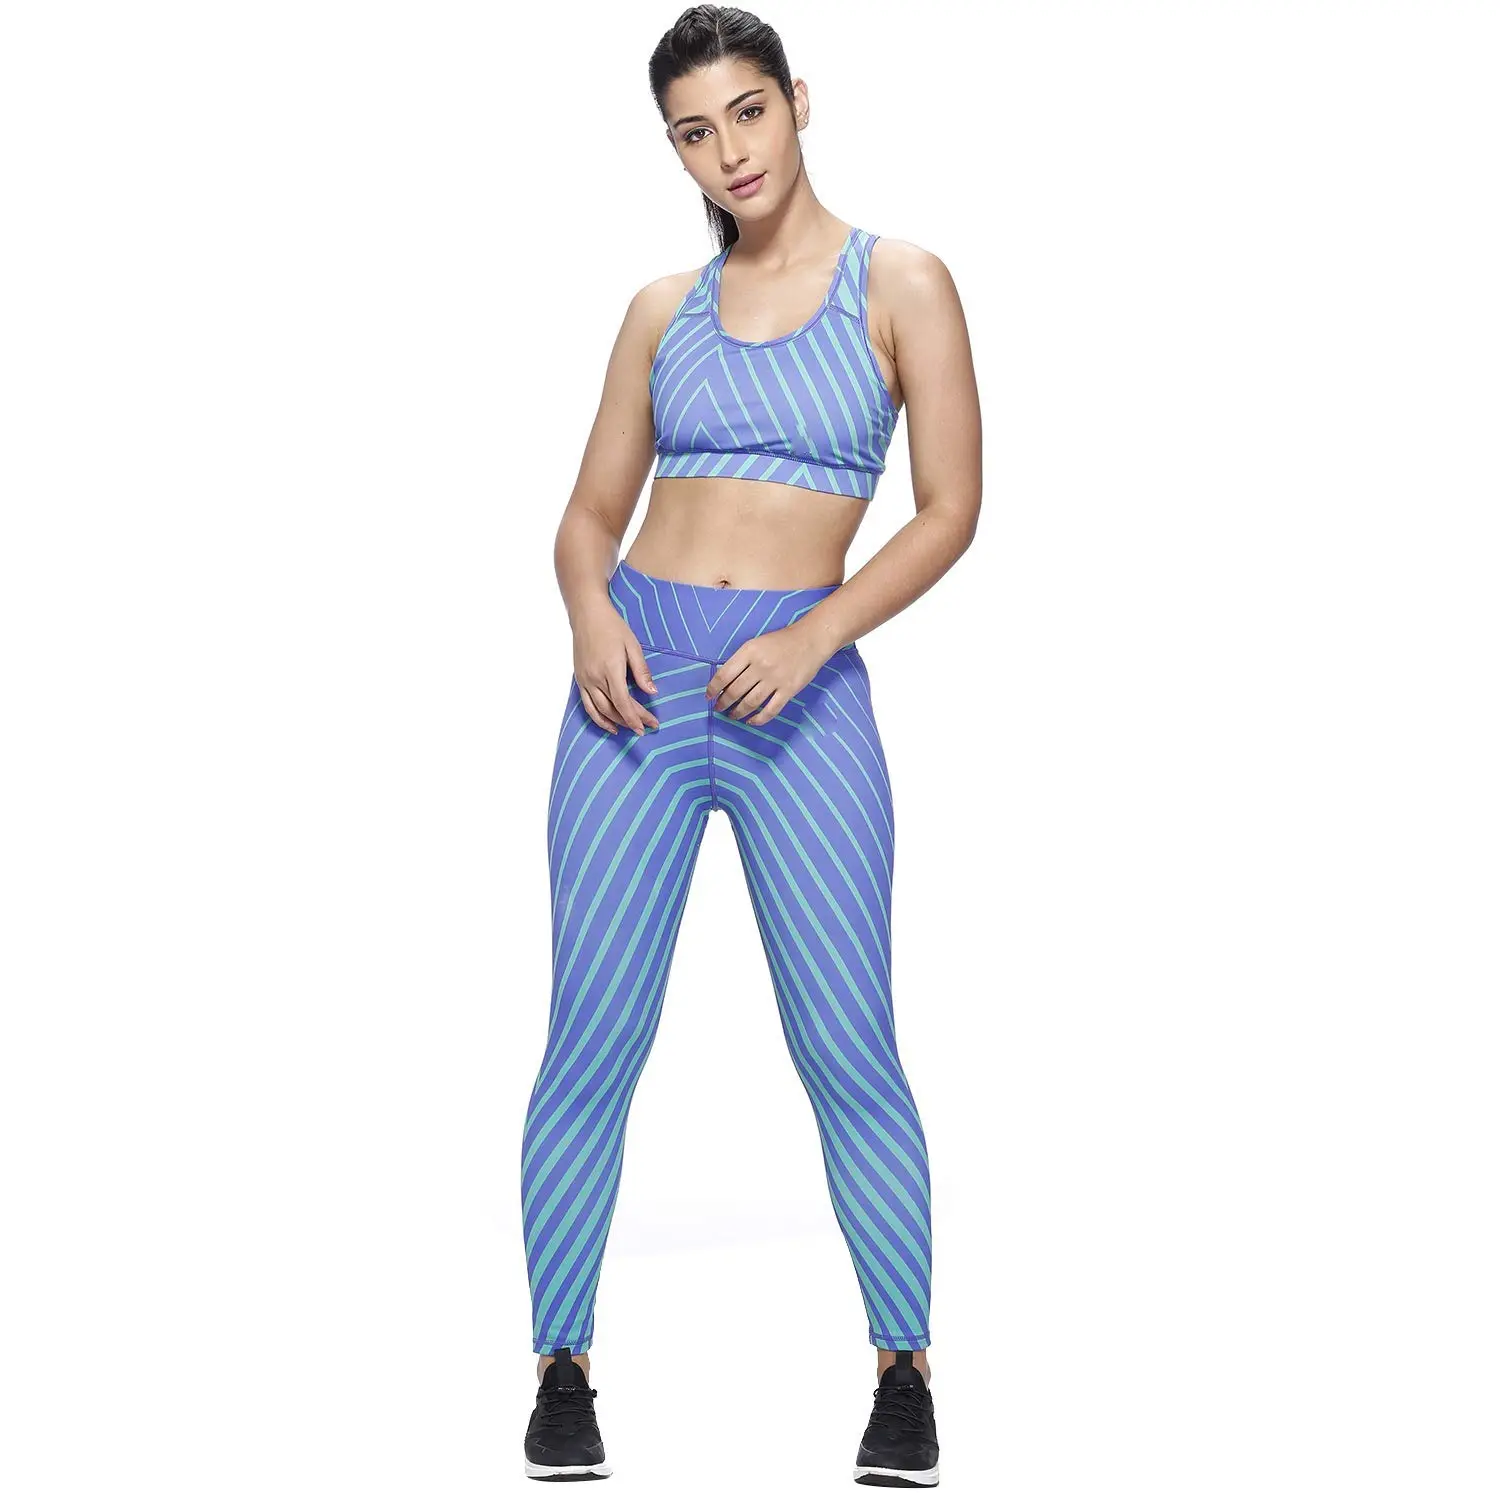 Benutzer definierte Logo Yoga Workout Sets Damen bekleidung Großhandel Neue Sporta nzug Nahtlose BH Yoga Anzug Fitness